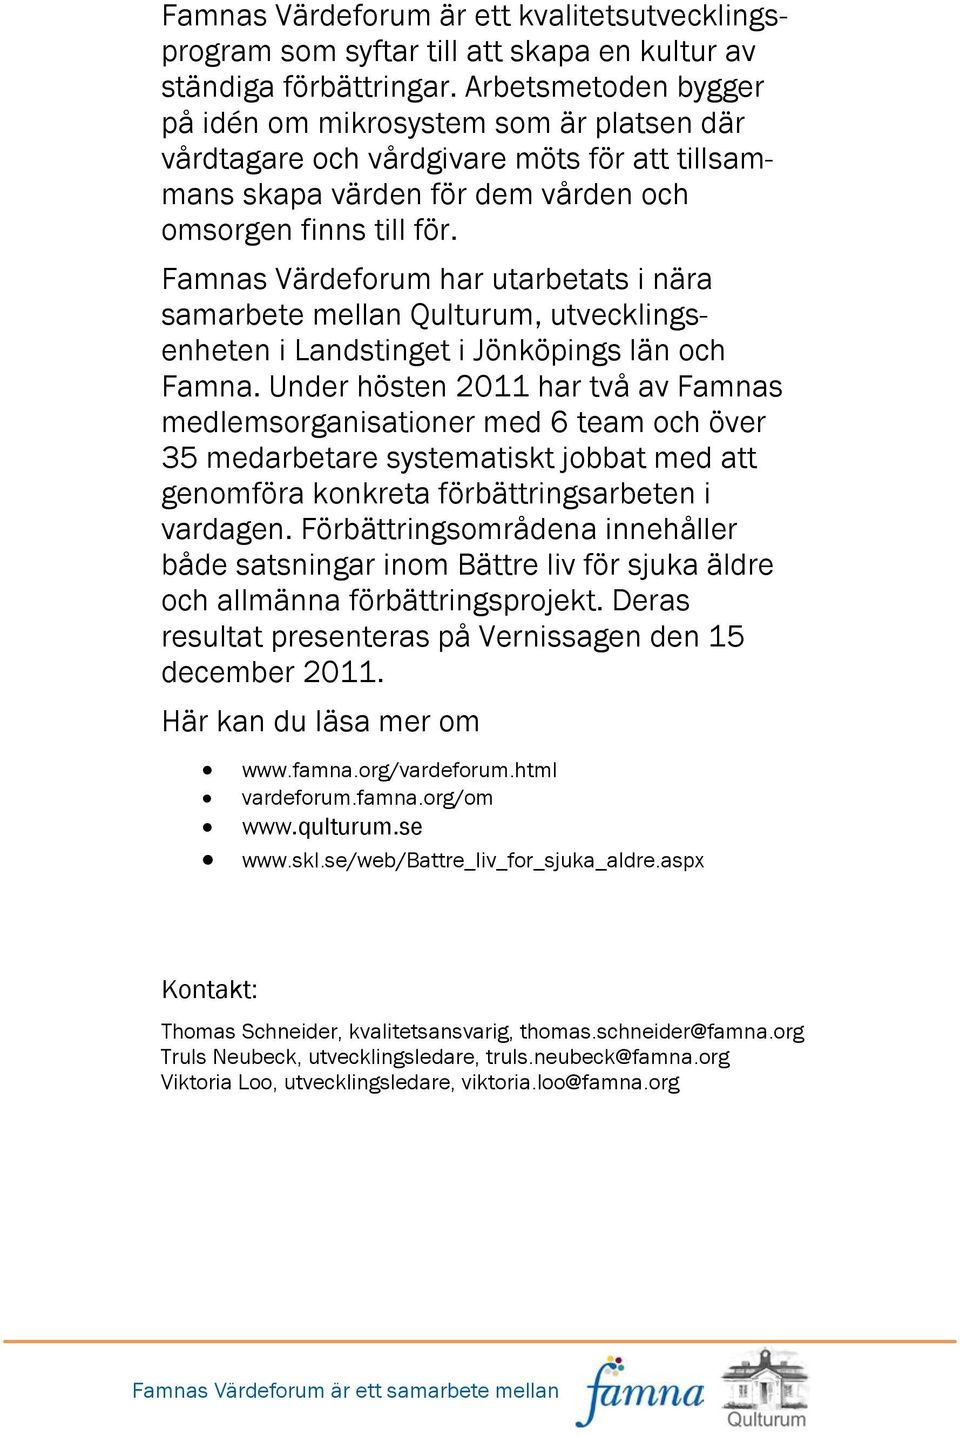 Famnas Värdeforum har utarbetats i nära samarbete mellan Qulturum, utvecklingsenheten i Landstinget i Jönköpings län och Famna.